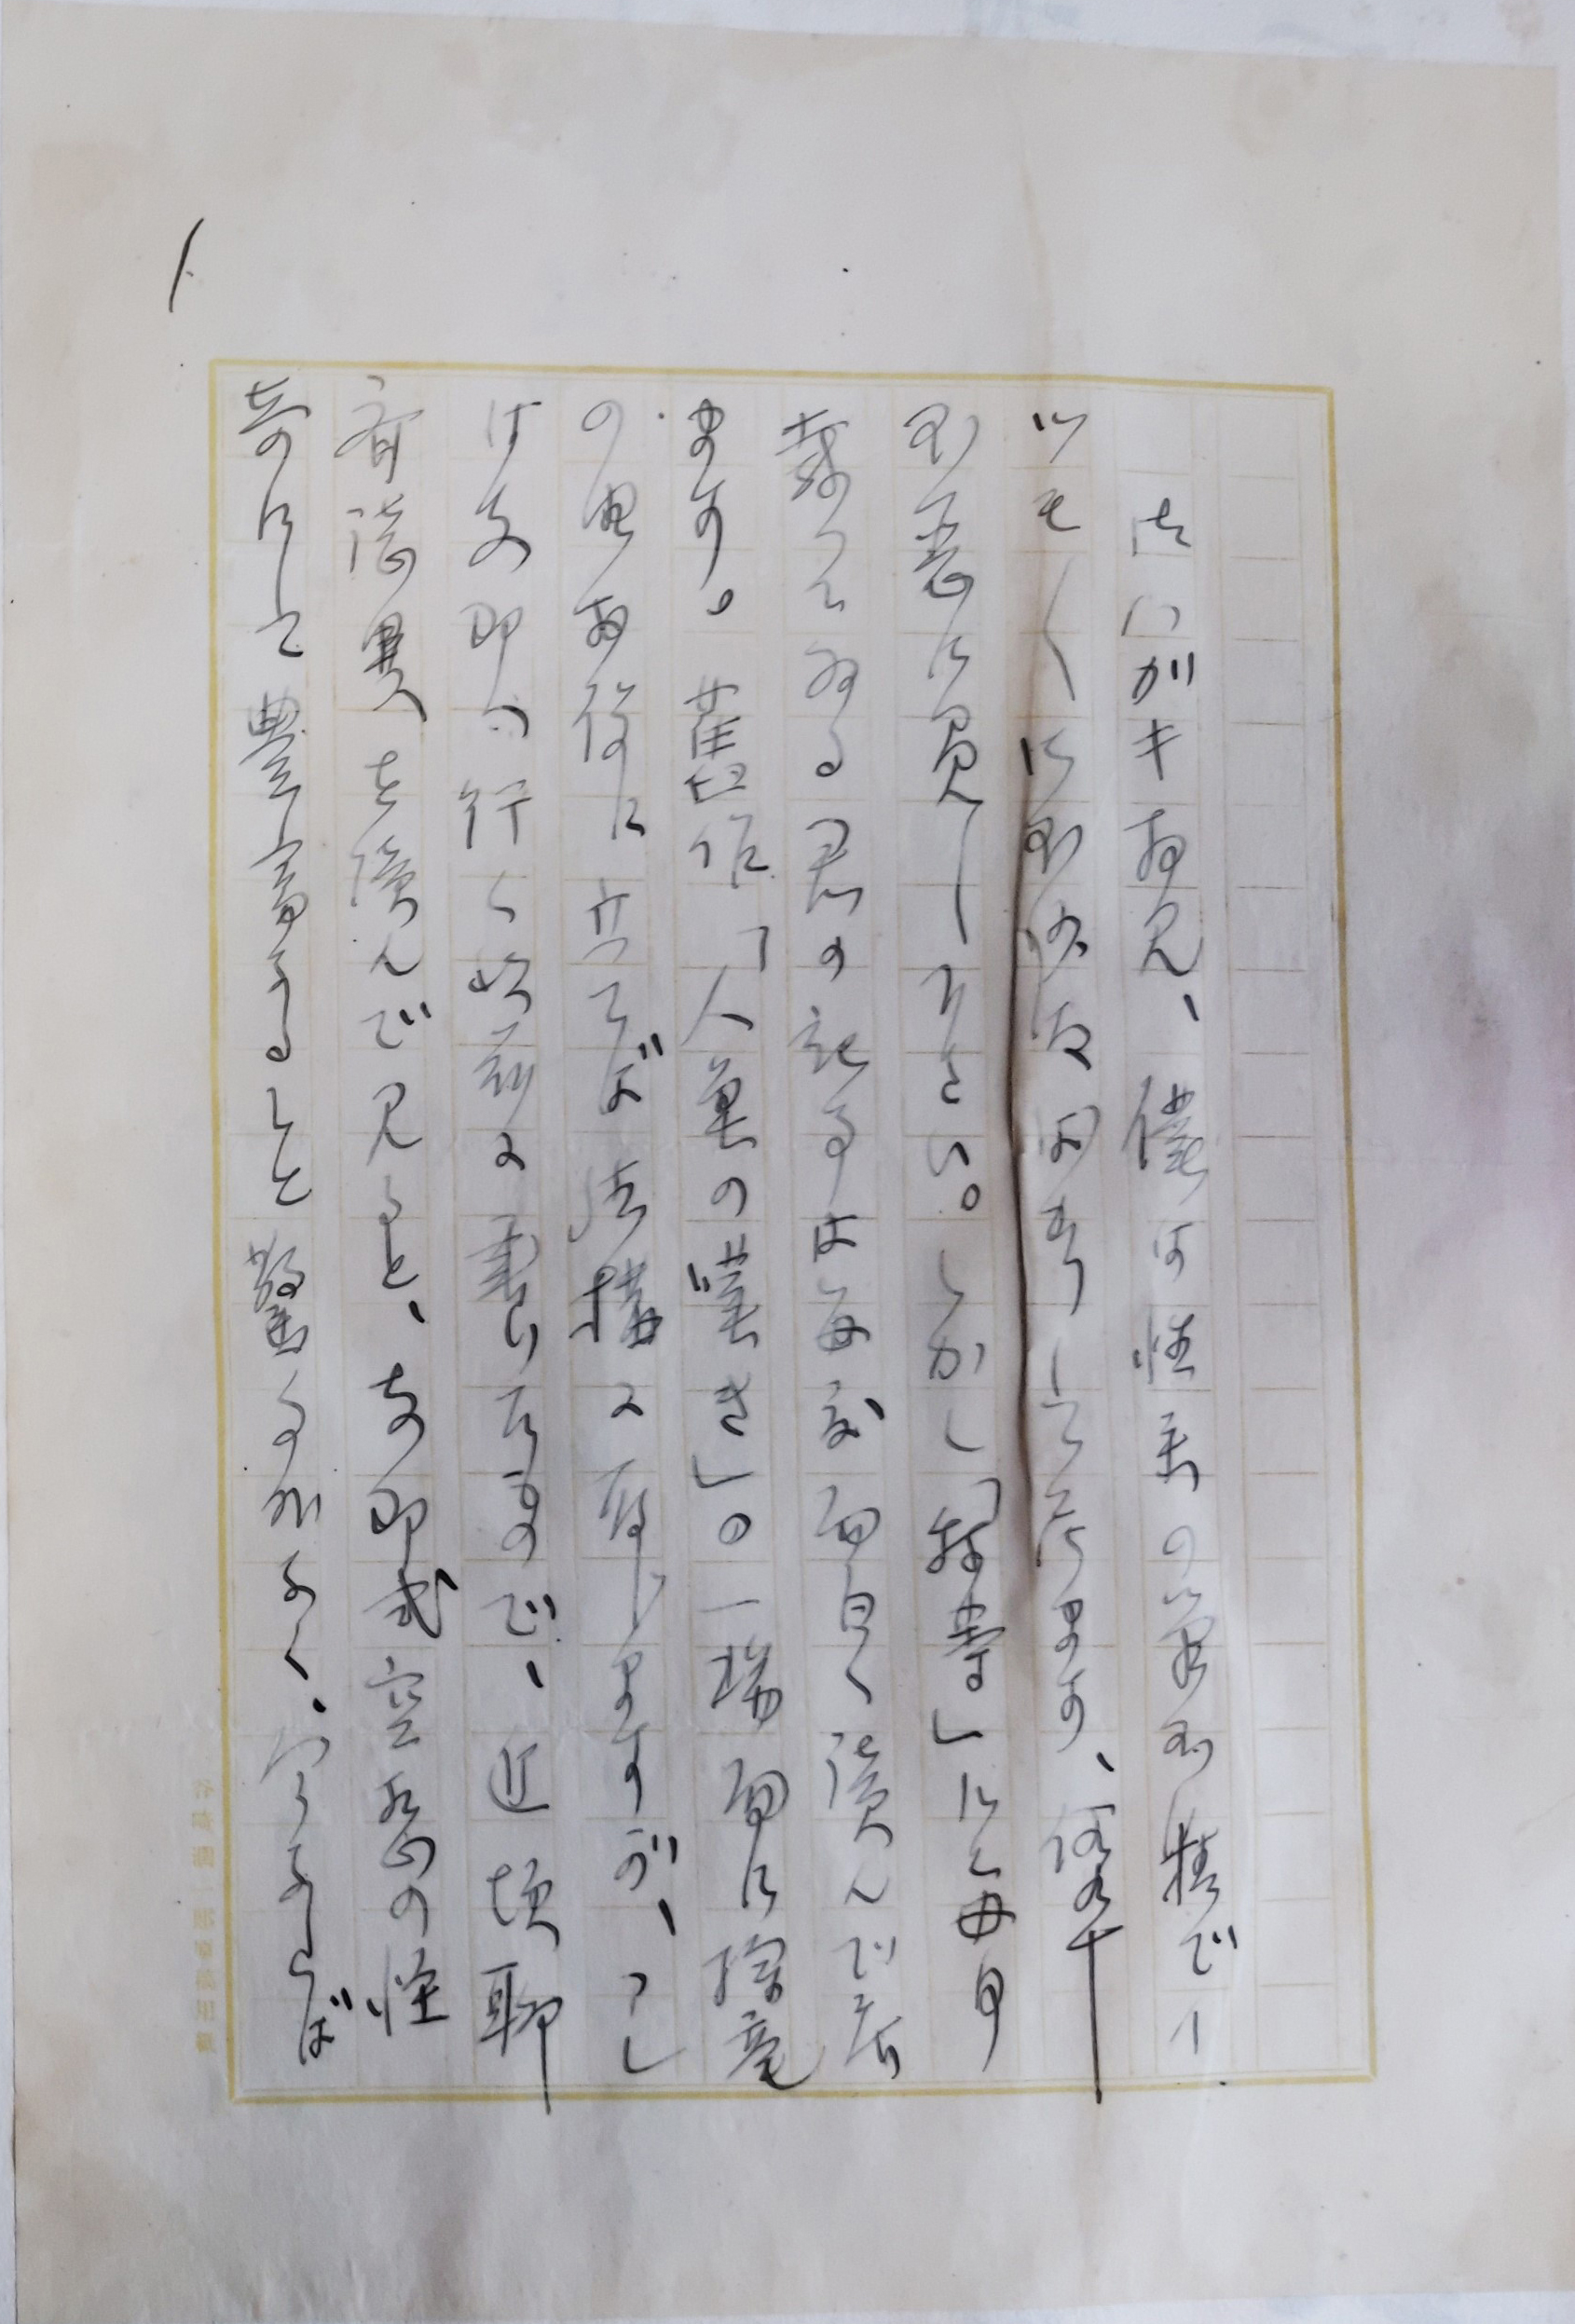 谷崎潤一郎の水島宛書簡（部分、1921年と推定）